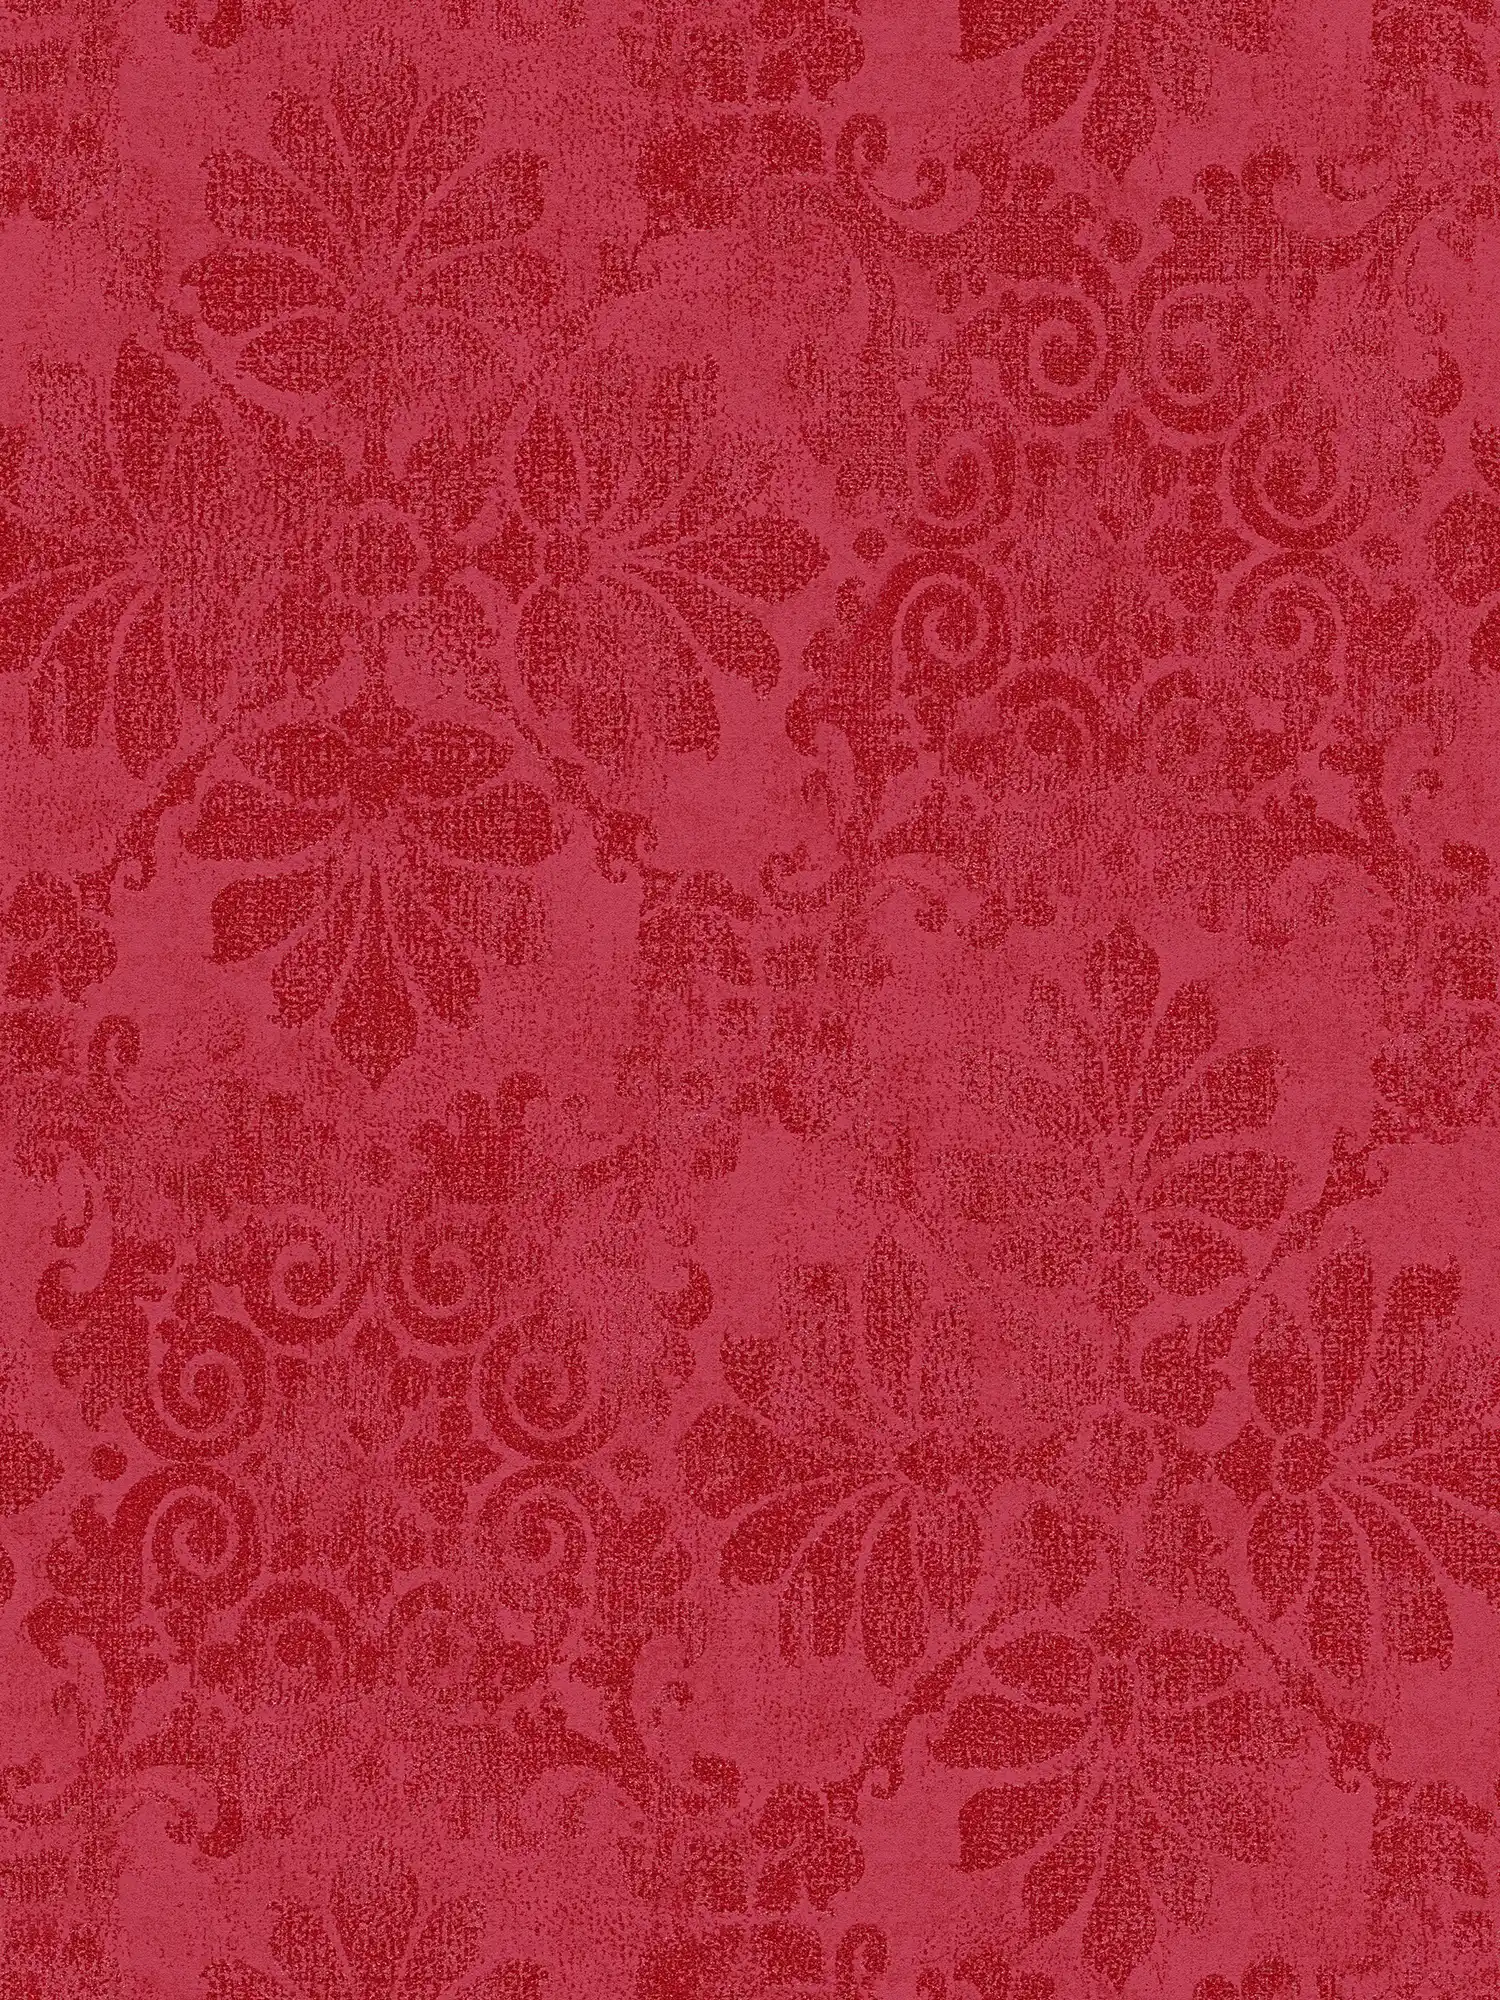 Carta da parati con ornamenti floreali in stile vintage - rosso, metallizzato
